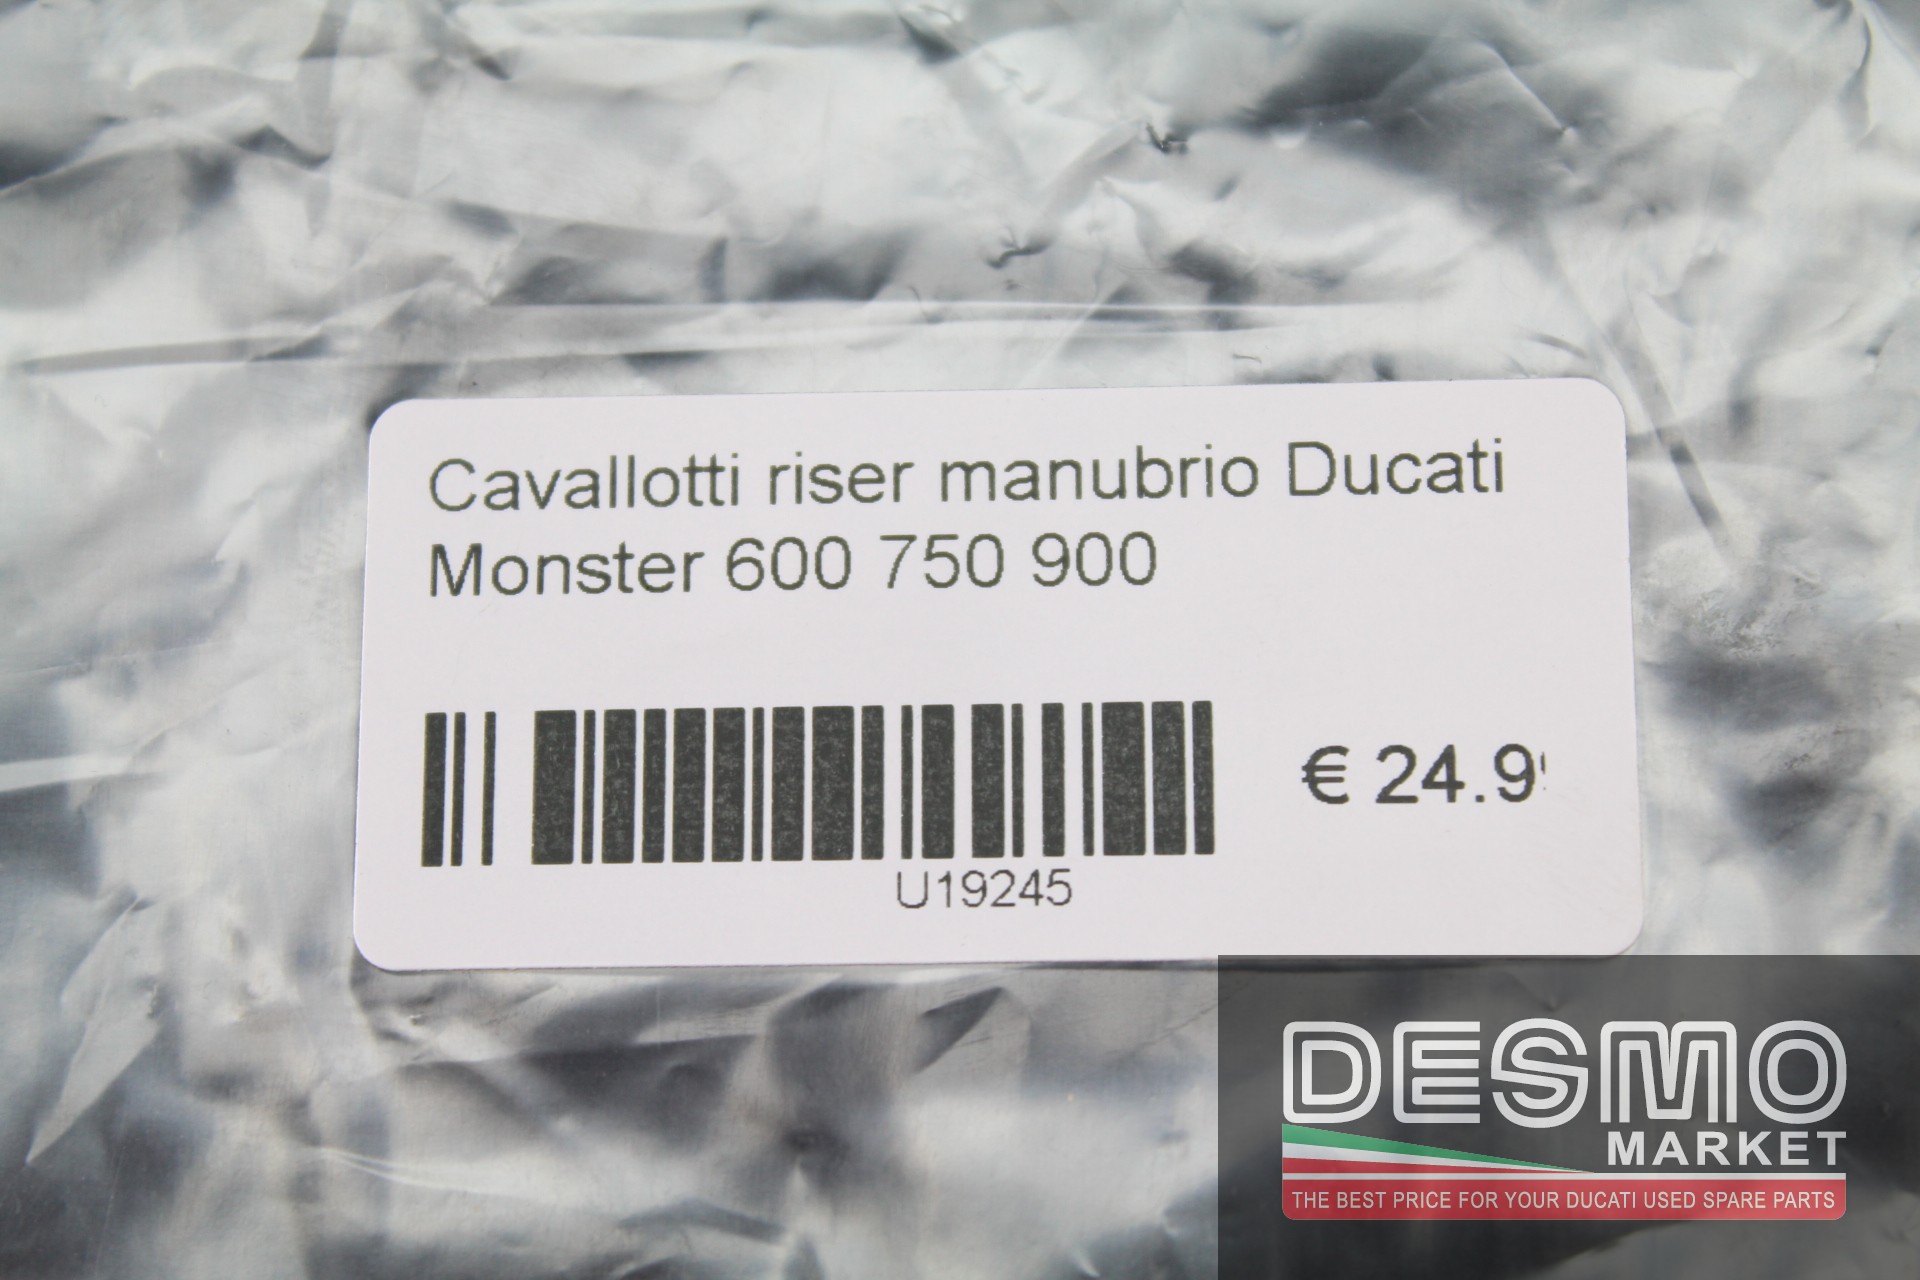 Cavallotti riser manubrio Ducati Monster 600 750 900